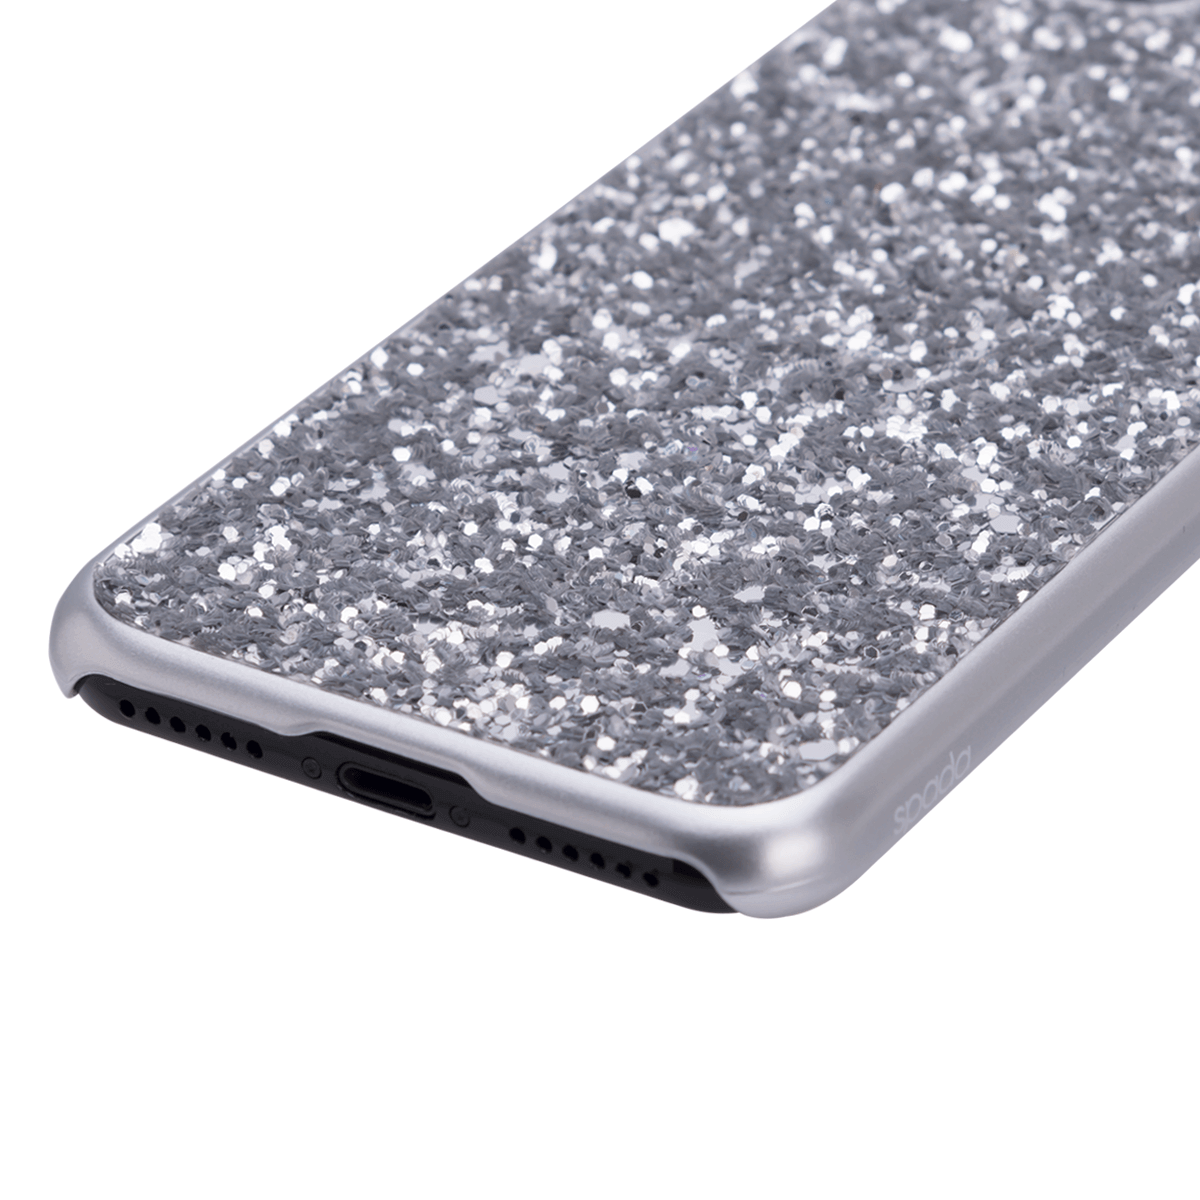 iPhone 7/8 için spada Glitter Gümüş rengi Kapak